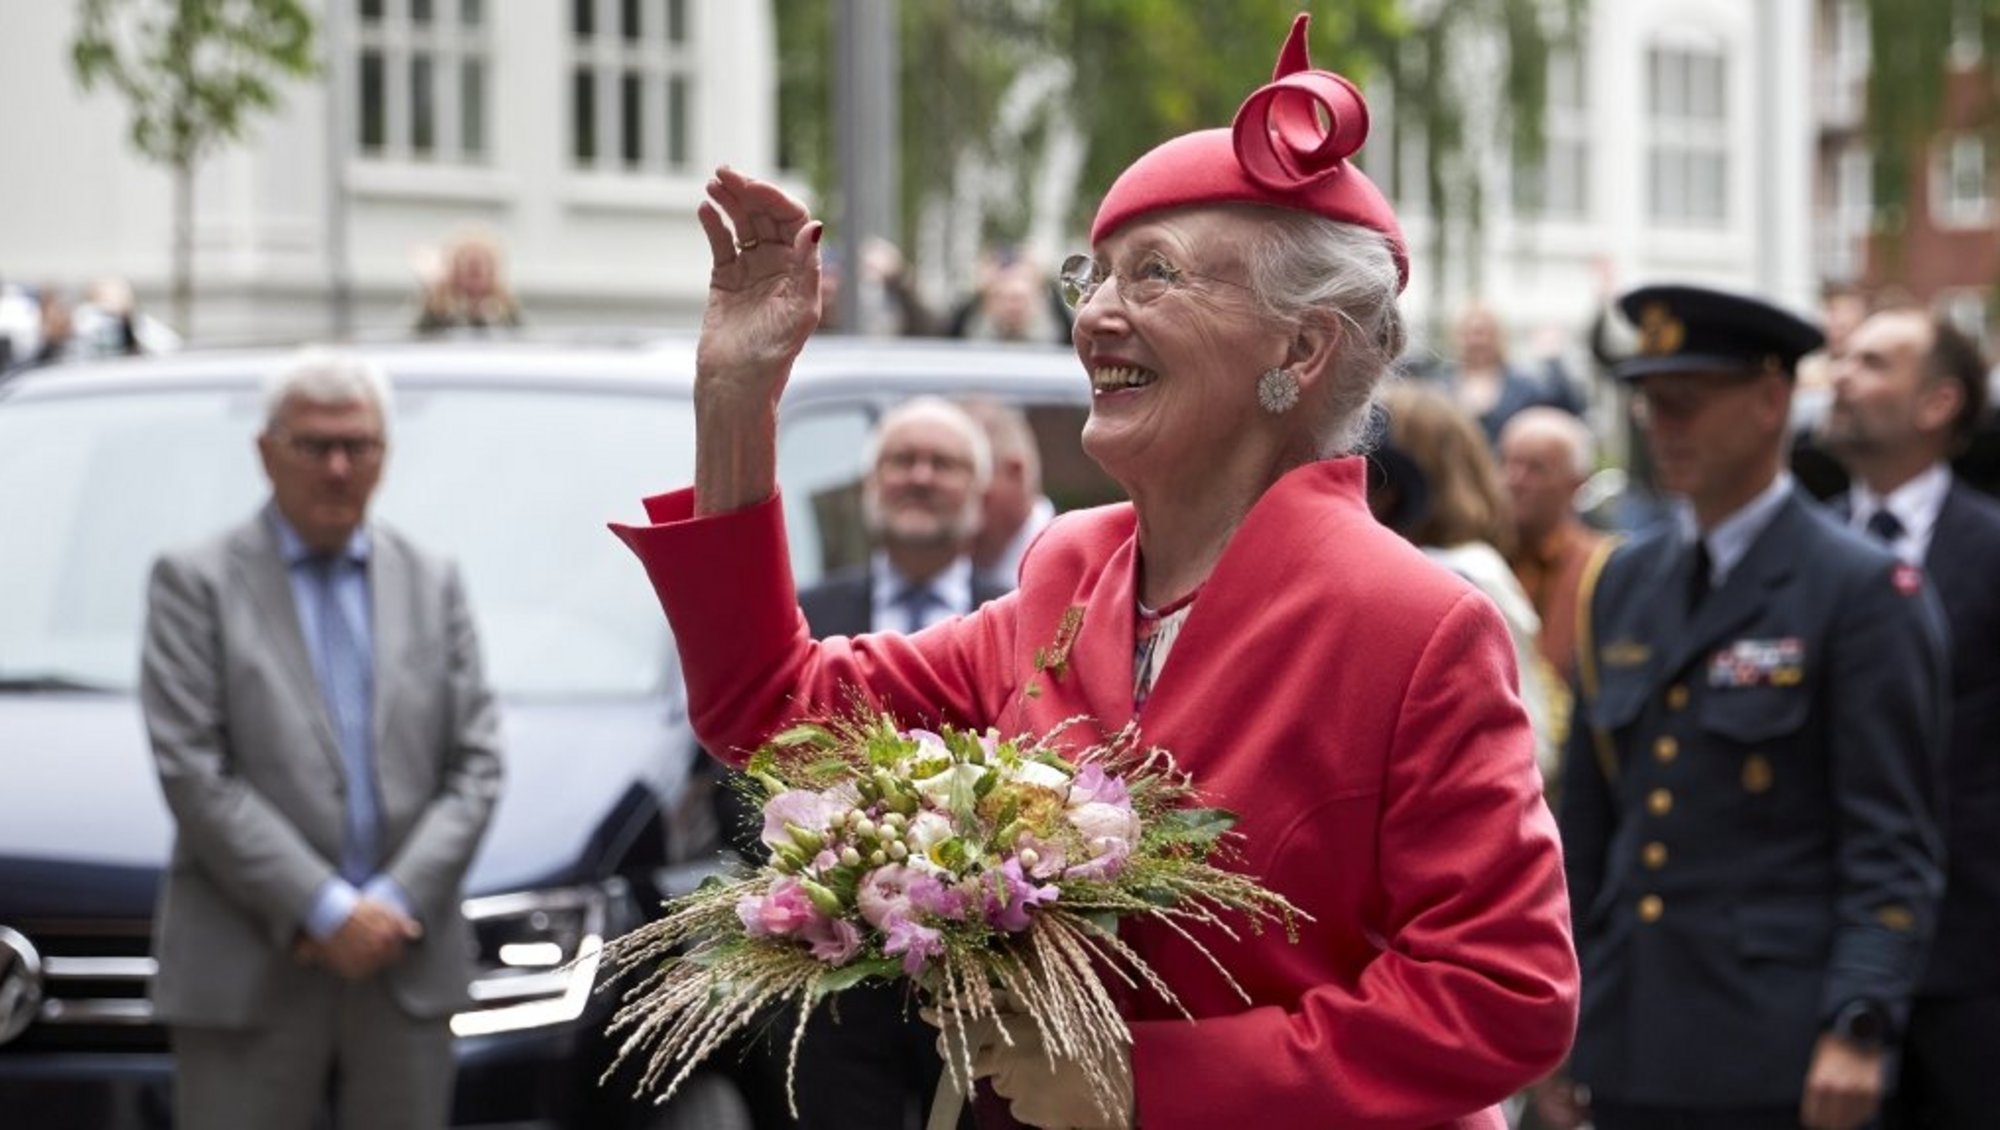 Dronning Margrethe iført en pink dragt og hat og med en stor buket blomster, vinker og smiler.